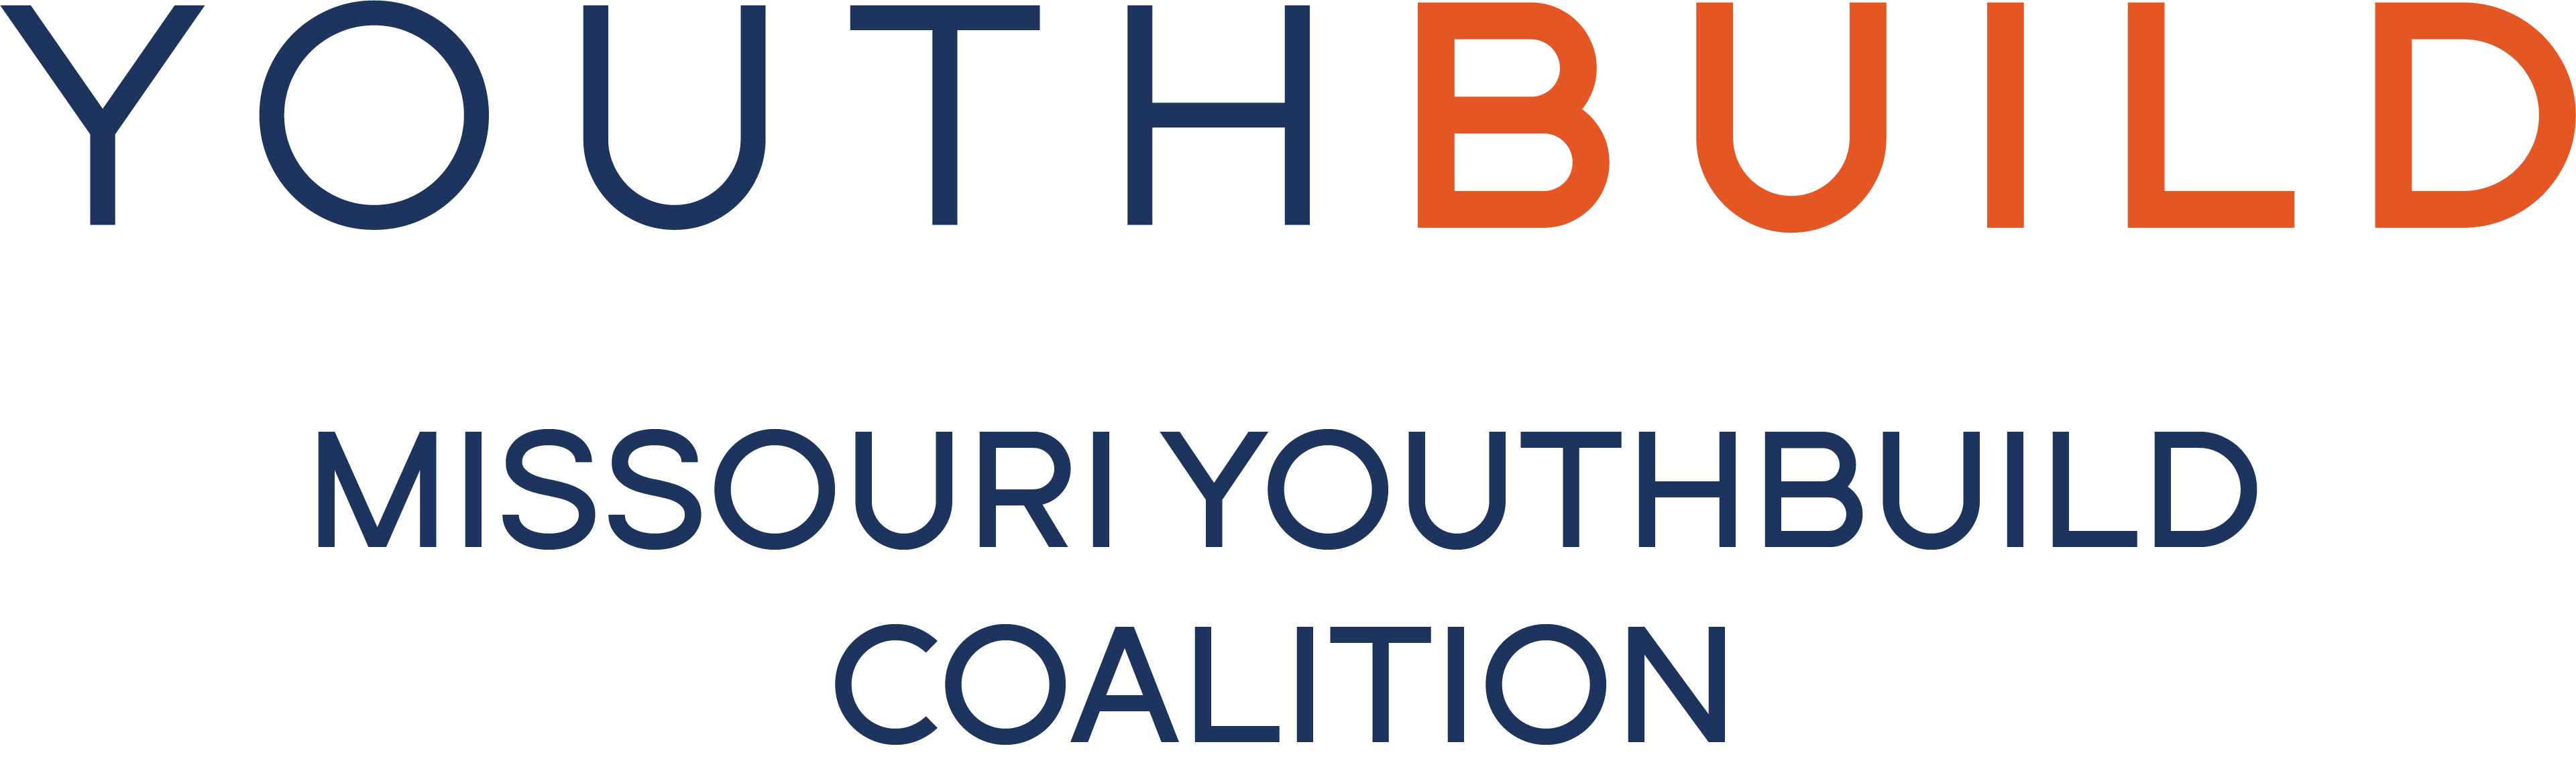 YouthBuild Missouri YouthBuild Coalition